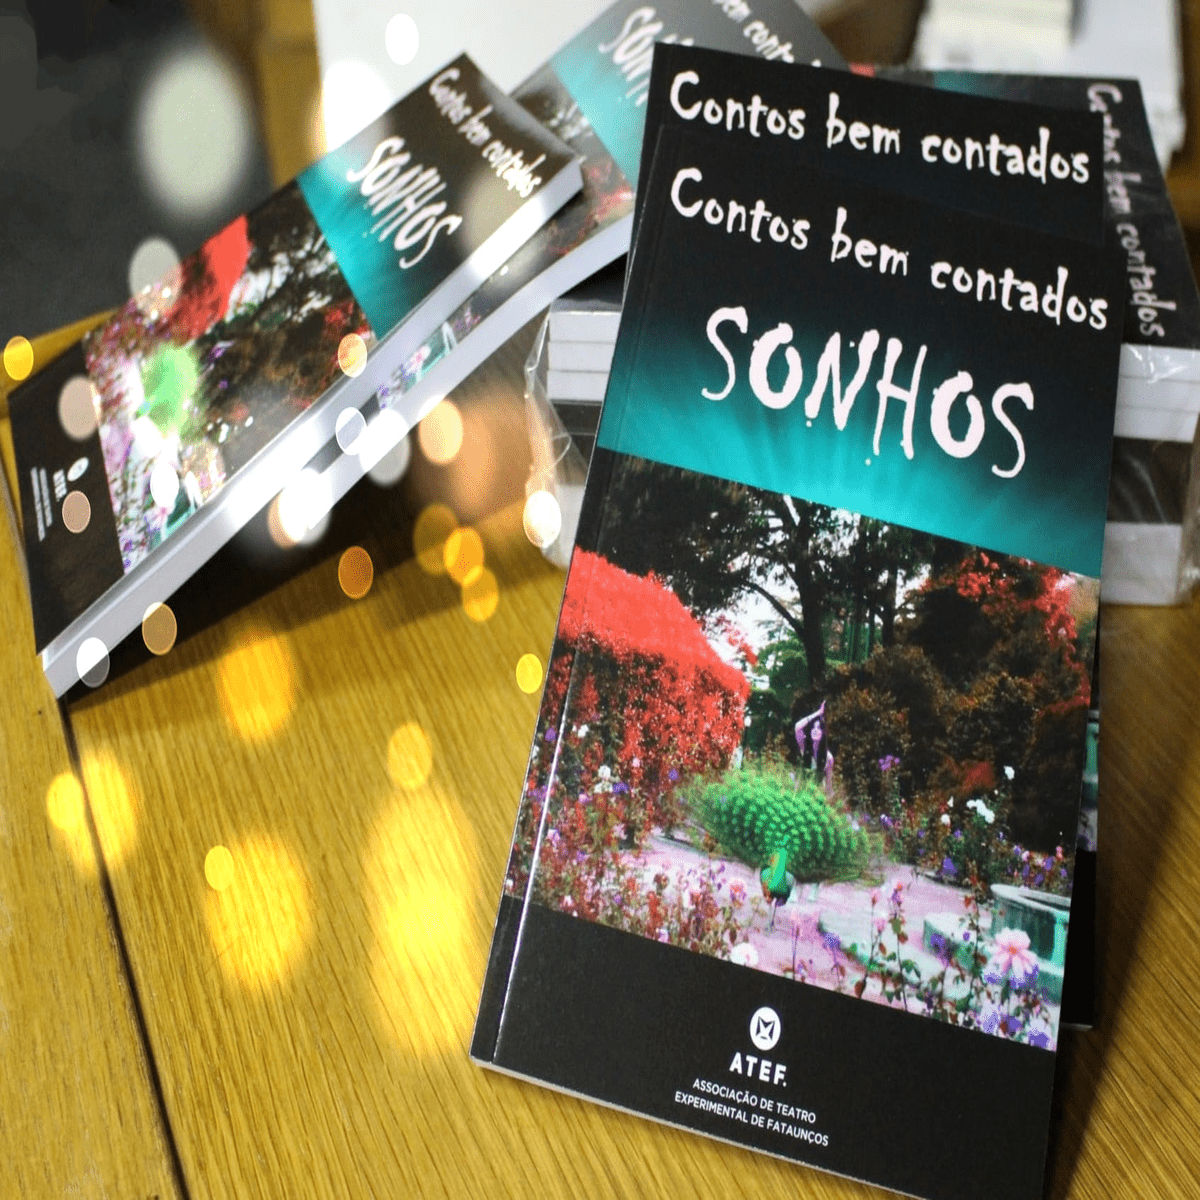 Read more about the article Livro “Contos bem contados: Sonhos” chega a Viseu